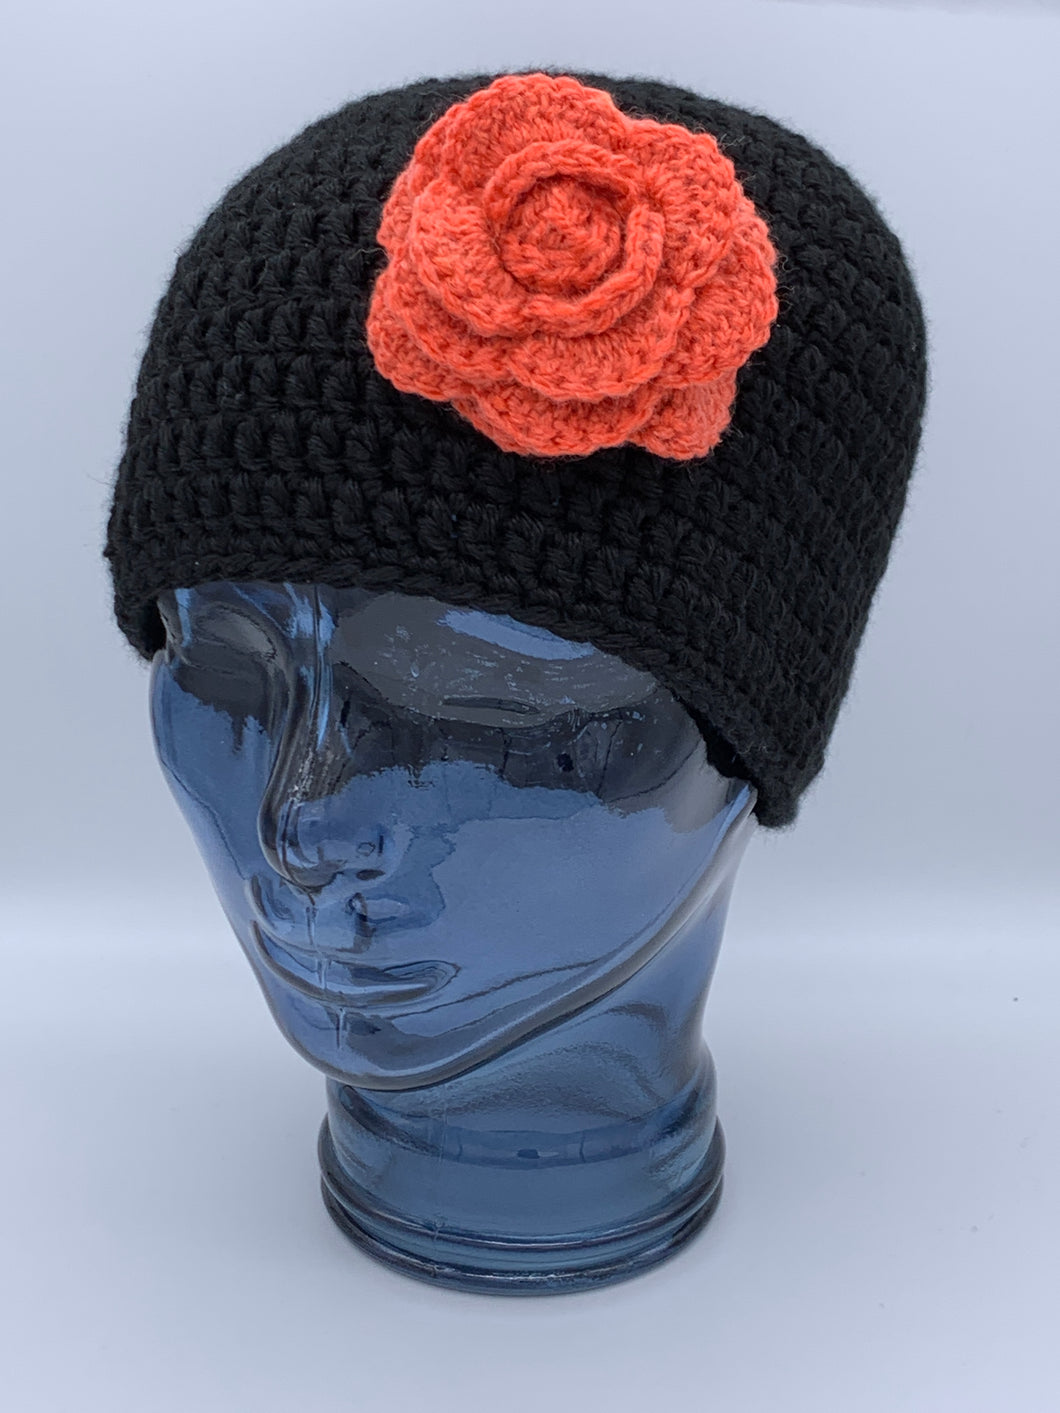 Crochet black beanie hat with orange flower- Size medium adult